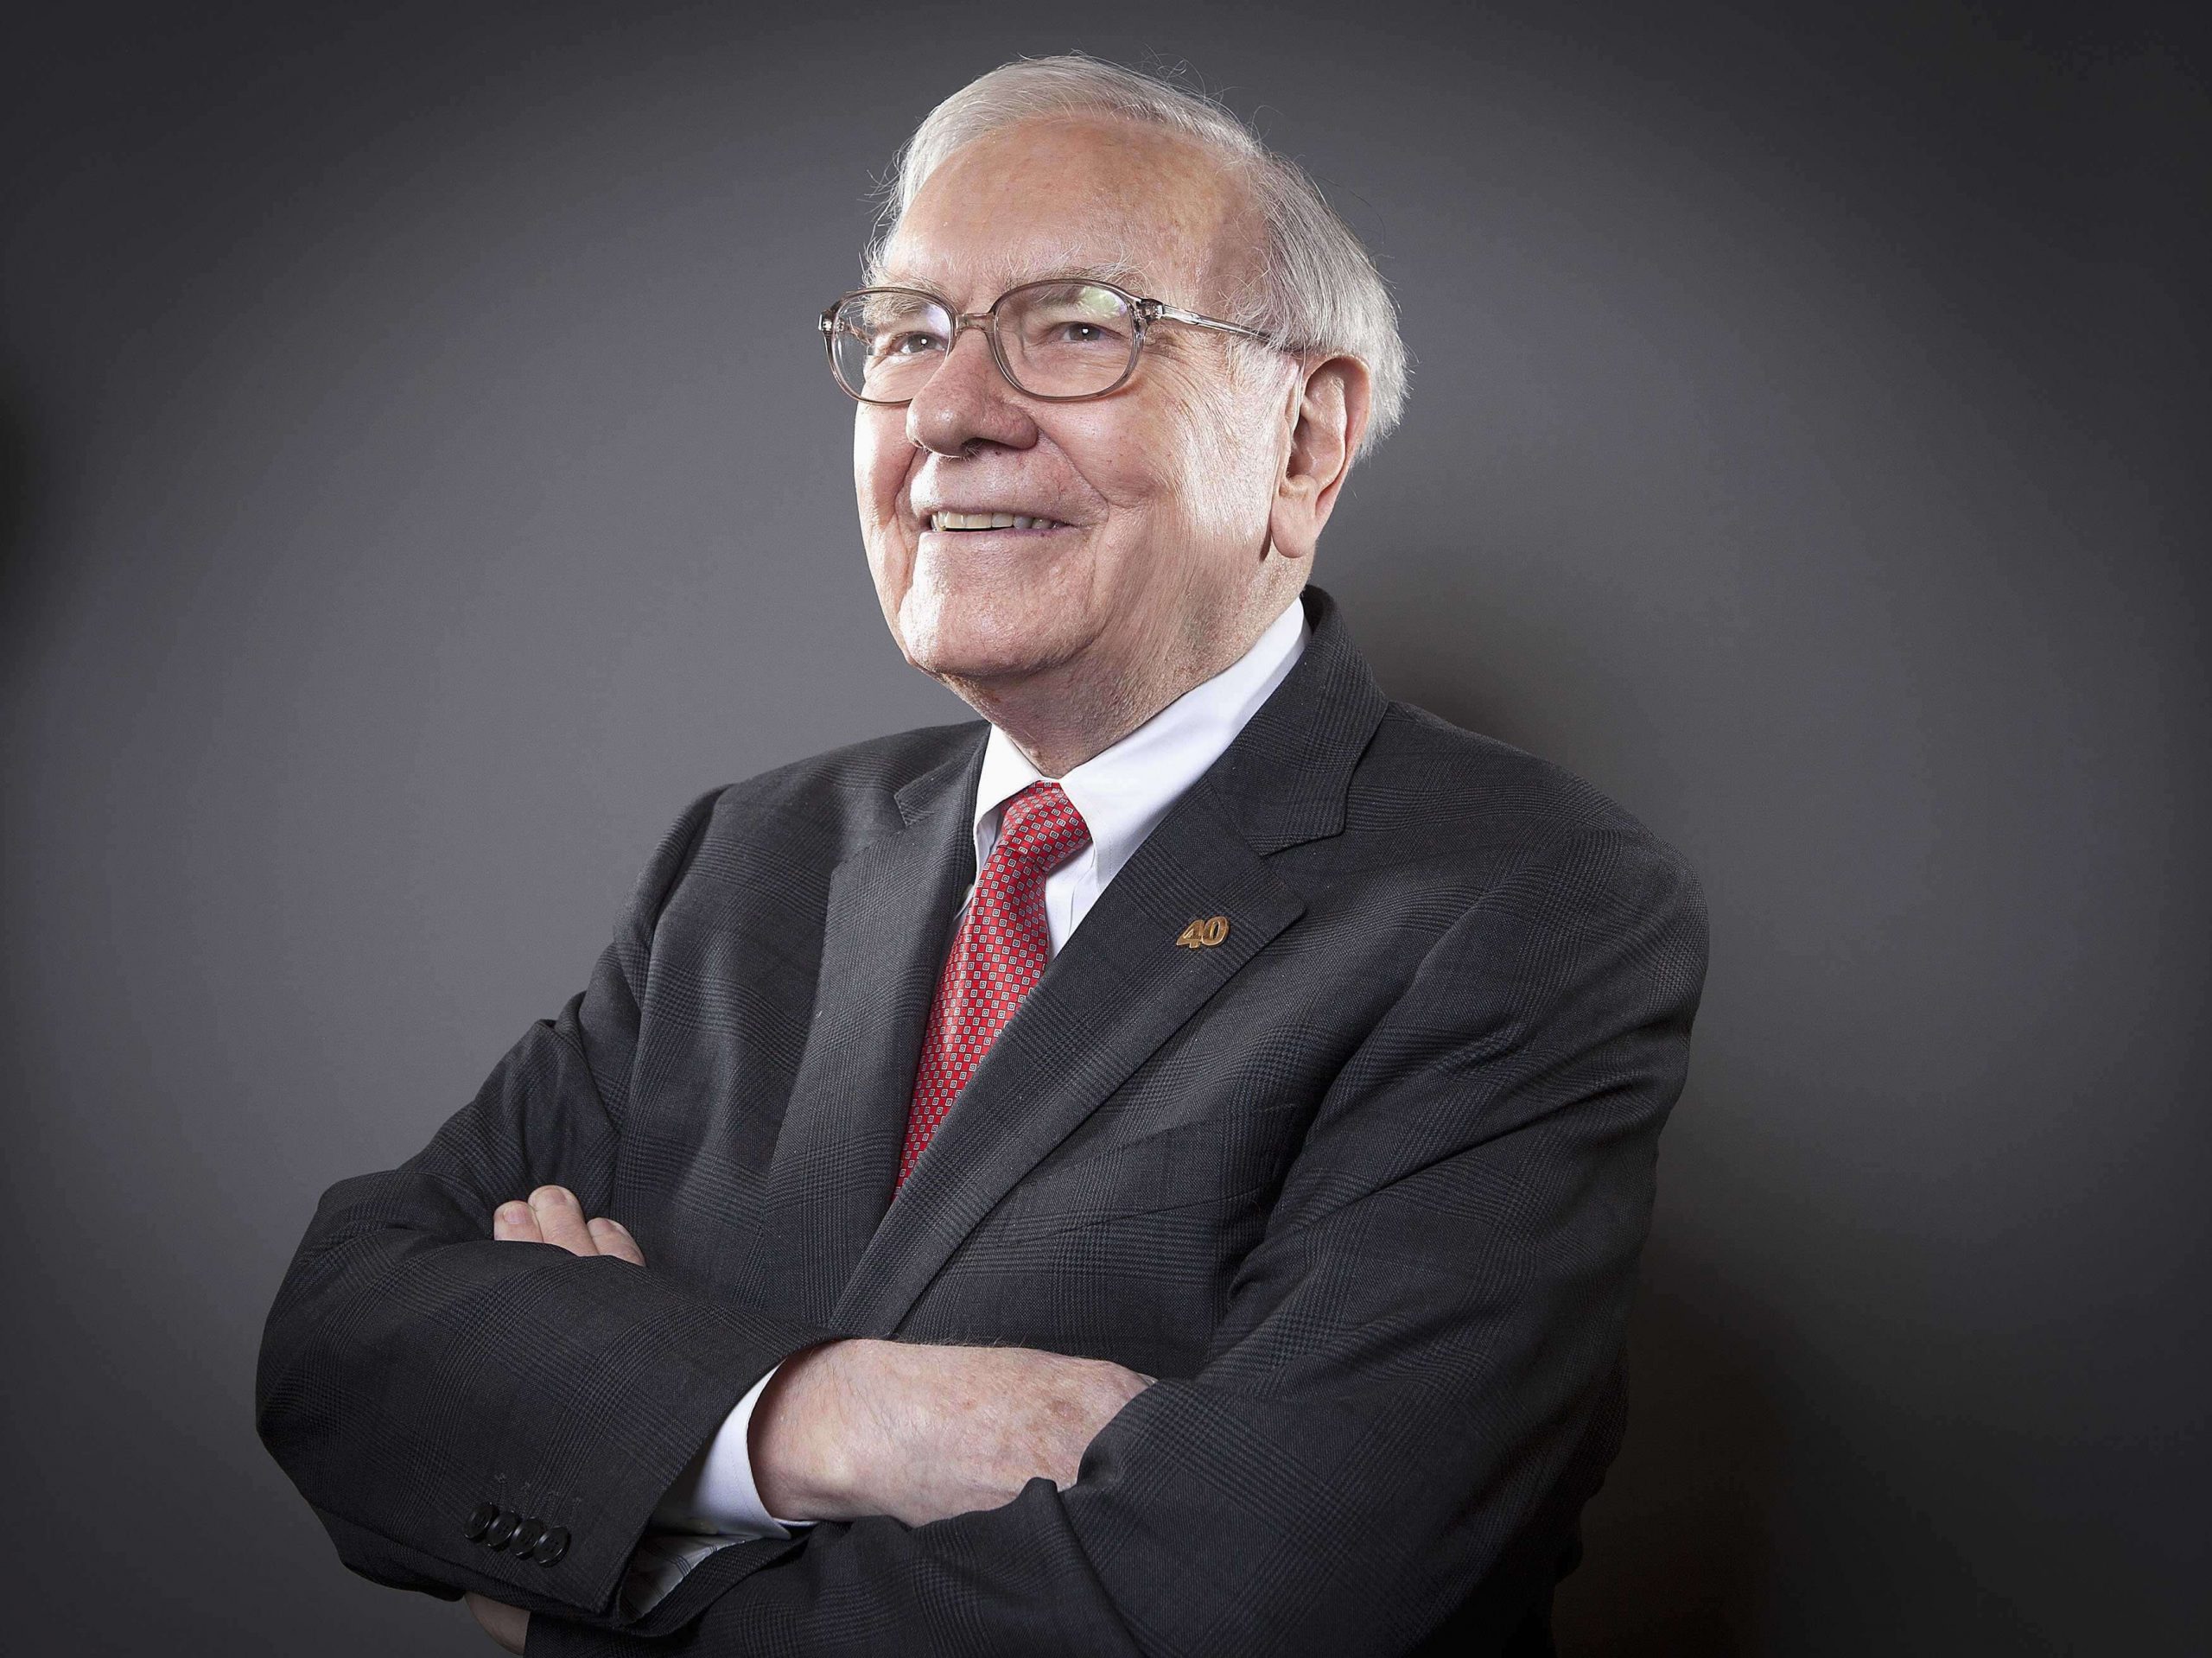 Warren-Buffet net worth